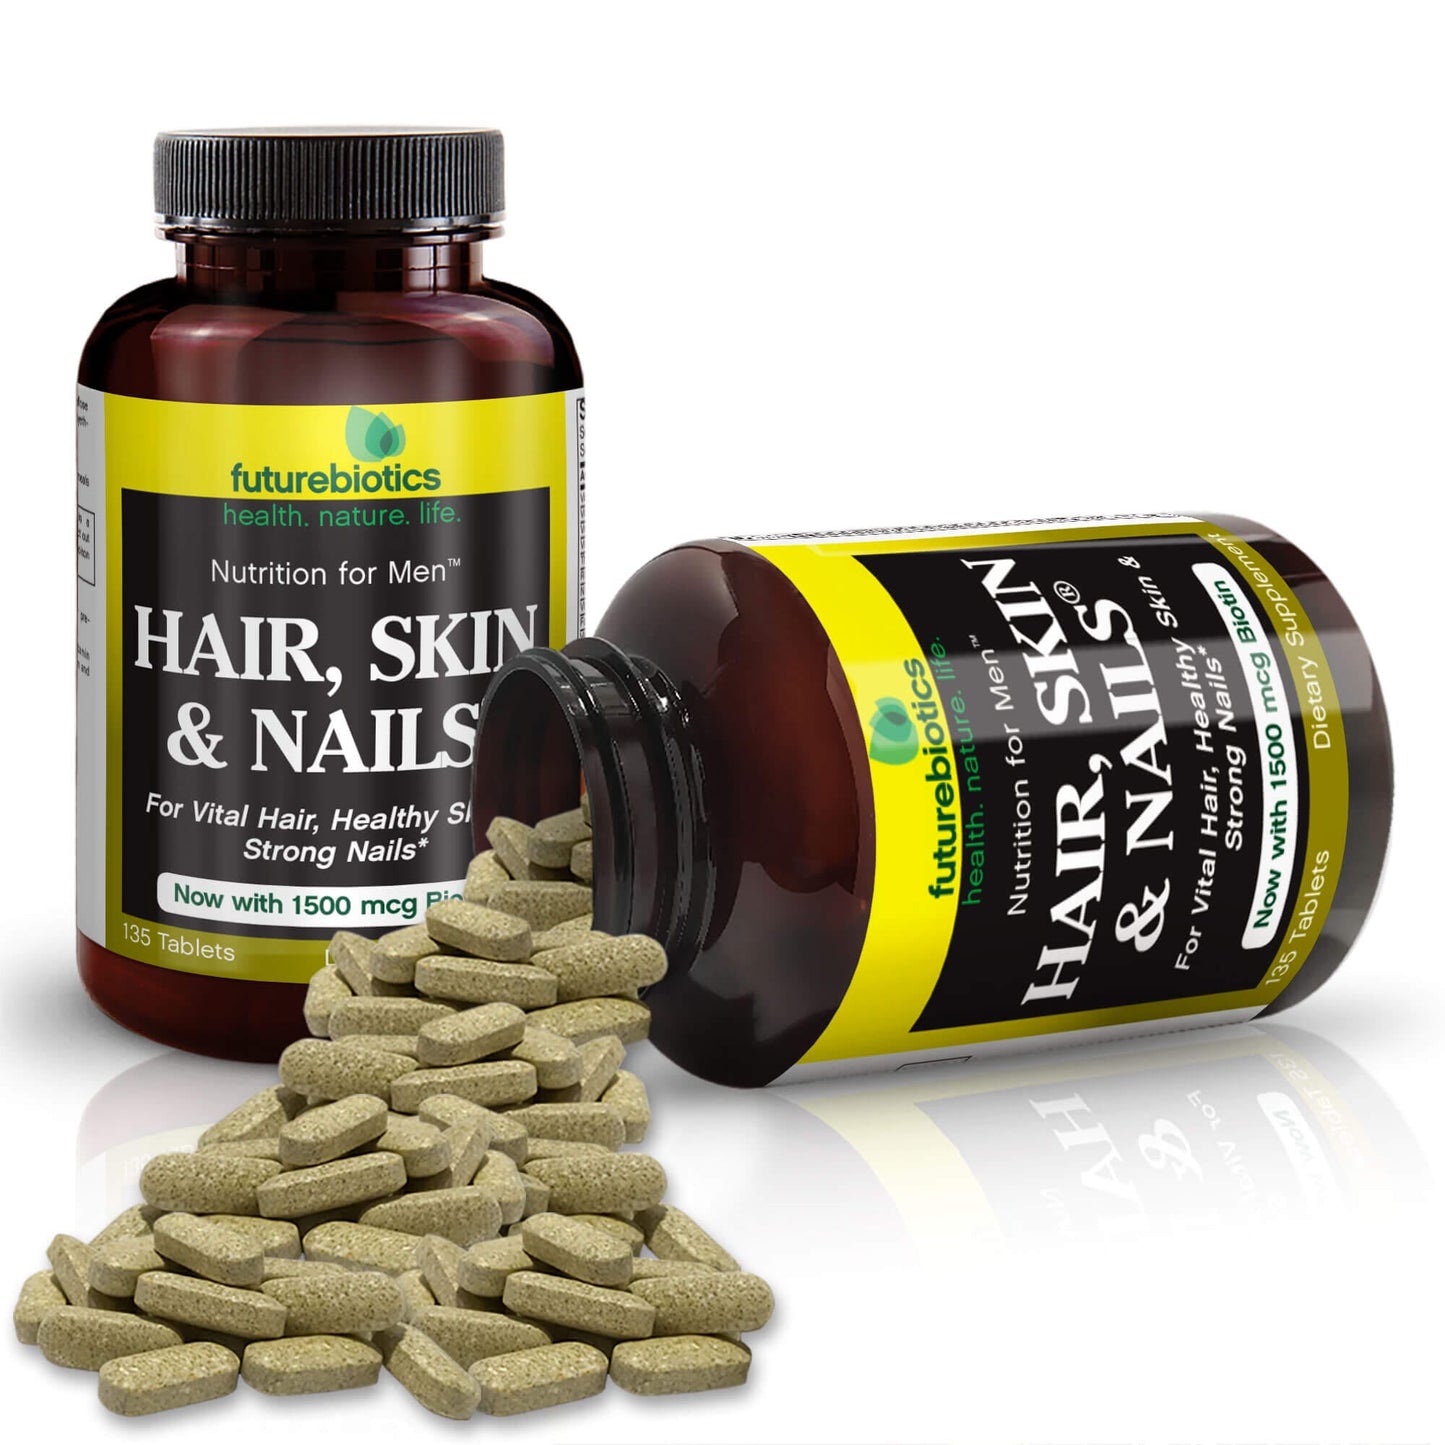 Futurebiotics Hair, Skin, & Nails Nutrition for Men, 135 Tablets